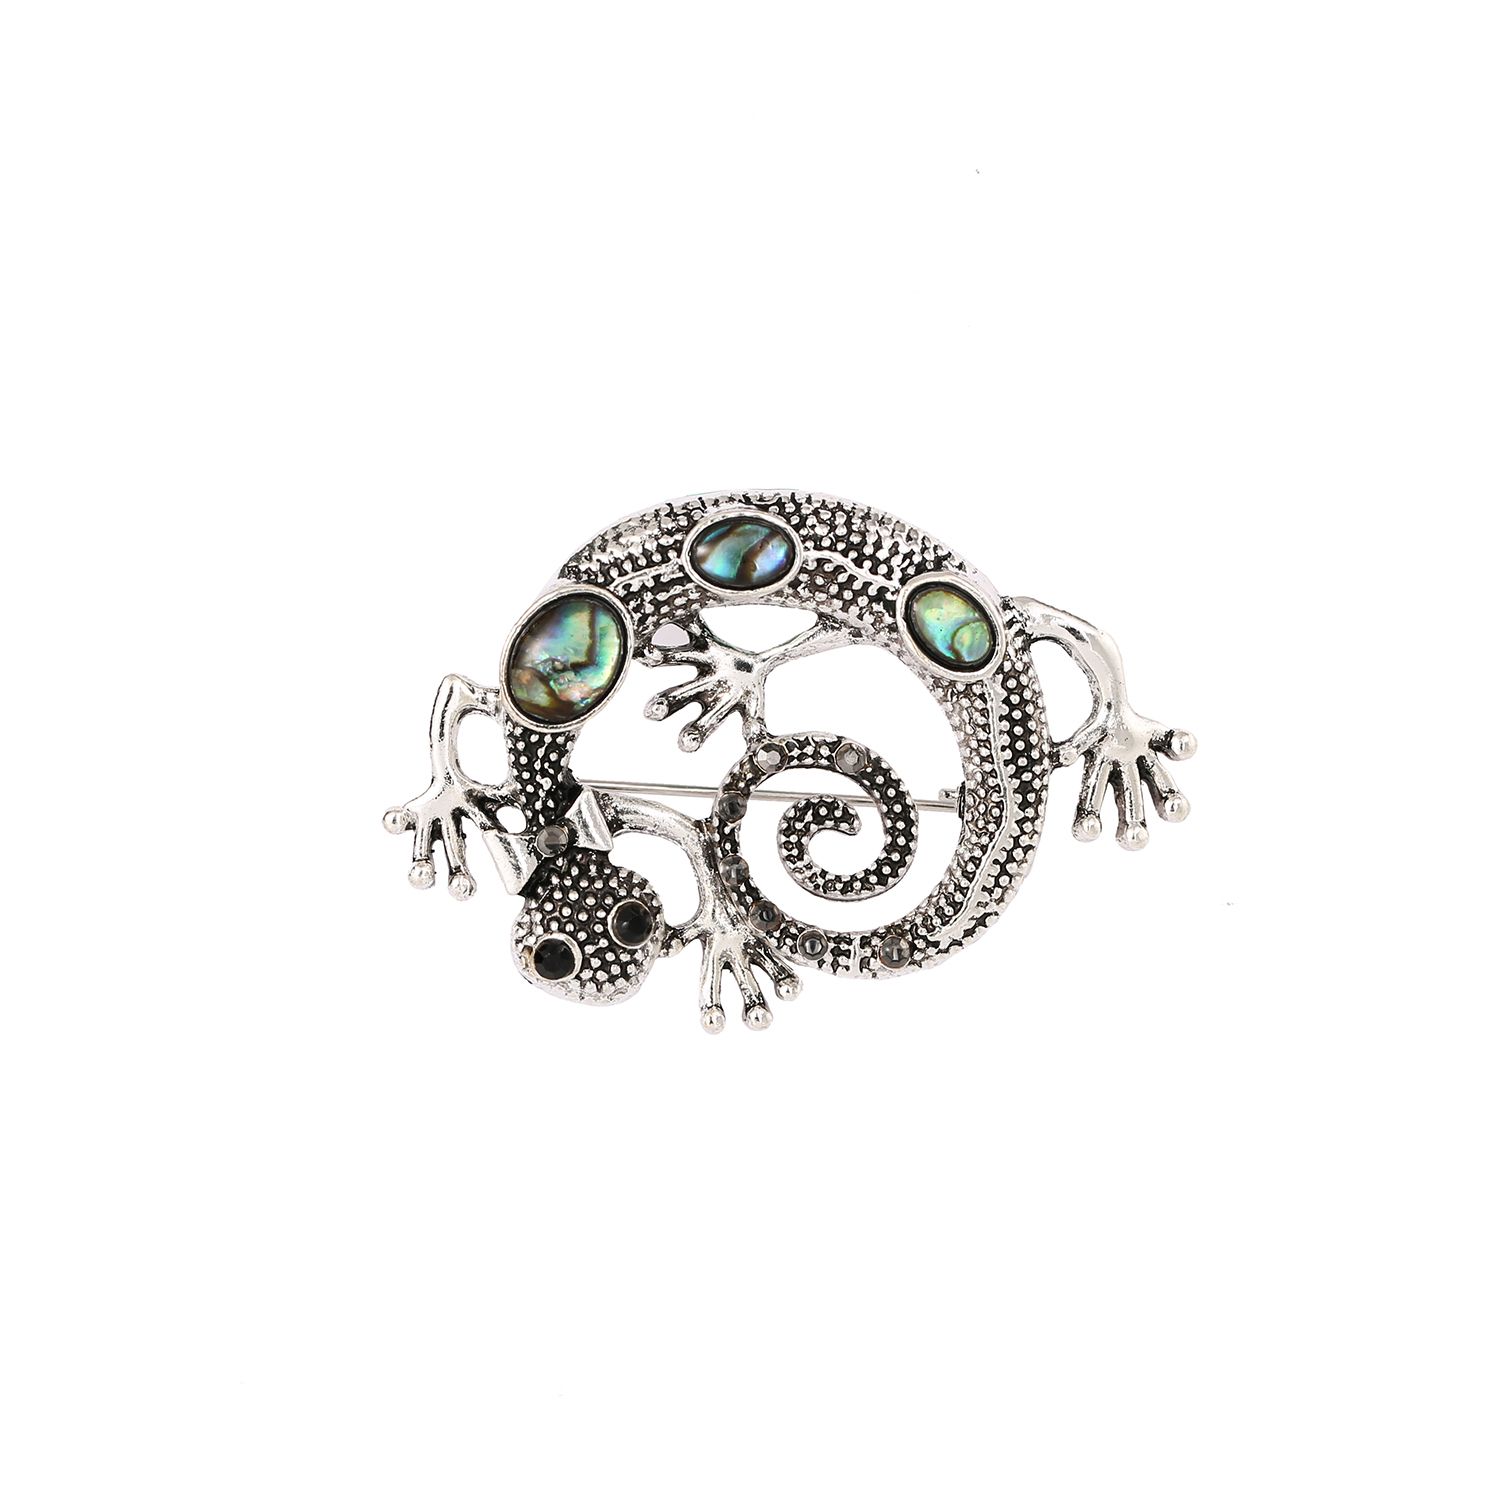 Aangepaste hagedis ontwerp fijne sieraden broche pin voor dames en heren